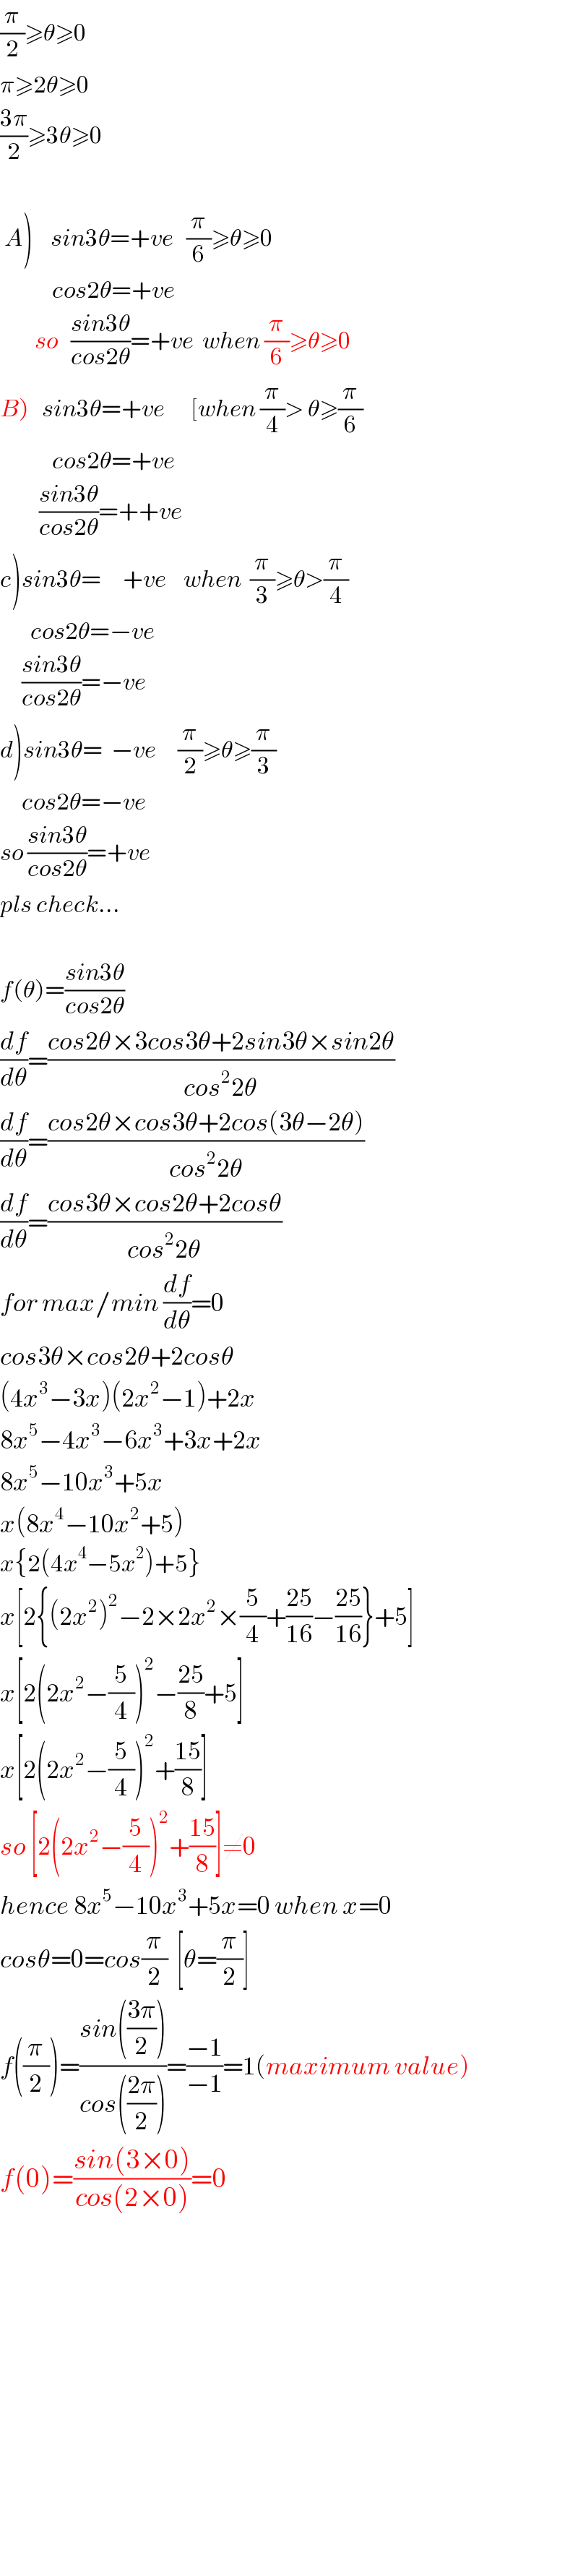 (π/2)≥θ≥0  π≥2θ≥0  ((3π)/2)≥3θ≥0       A)    sin3θ=+ve   (π/6)≥θ≥0              cos2θ=+ve           so   ((sin3θ)/(cos2θ))=+ve  when (π/6)≥θ≥0  B)   sin3θ=+ve      [when (π/4)> θ≥(π/6)              cos2θ=+ve           ((sin3θ)/(cos2θ))=++ve  c)sin3θ=     +ve    when  (π/3)≥θ>(π/4)         cos2θ=−ve       ((sin3θ)/(cos2θ))=−ve  d)sin3θ=  −ve     (π/2)≥θ≥(π/3)       cos2θ=−ve  so ((sin3θ)/(cos2θ))=+ve  pls check...    f(θ)=((sin3θ)/(cos2θ))  (df/dθ)=((cos2θ×3cos3θ+2sin3θ×sin2θ)/(cos^2 2θ))  (df/dθ)=((cos2θ×cos3θ+2cos(3θ−2θ))/(cos^2 2θ))  (df/dθ)=((cos3θ×cos2θ+2cosθ)/(cos^2 2θ))  for max/min (df/dθ)=0  cos3θ×cos2θ+2cosθ  (4x^3 −3x)(2x^2 −1)+2x  8x^5 −4x^3 −6x^3 +3x+2x  8x^5 −10x^3 +5x  x(8x^4 −10x^2 +5)  x{2(4x^4 −5x^2 )+5}  x[2{(2x^2 )^2 −2×2x^2 ×(5/4)+((25)/(16))−((25)/(16))}+5]  x[2(2x^2 −(5/4))^2 −((25)/8)+5]  x[2(2x^2 −(5/4))^2 +((15)/8)]  so [2(2x^2 −(5/4))^2 +((15)/8)]≠0  hence 8x^5 −10x^3 +5x=0 when x=0  cosθ=0=cos(π/2)  [θ=(π/2)]  f((π/2))=((sin(((3π)/2)))/(cos(((2π)/2))))=((−1)/(−1))=1(maximum value)  f(0)=((sin(3×0))/(cos(2×0)))=0                    